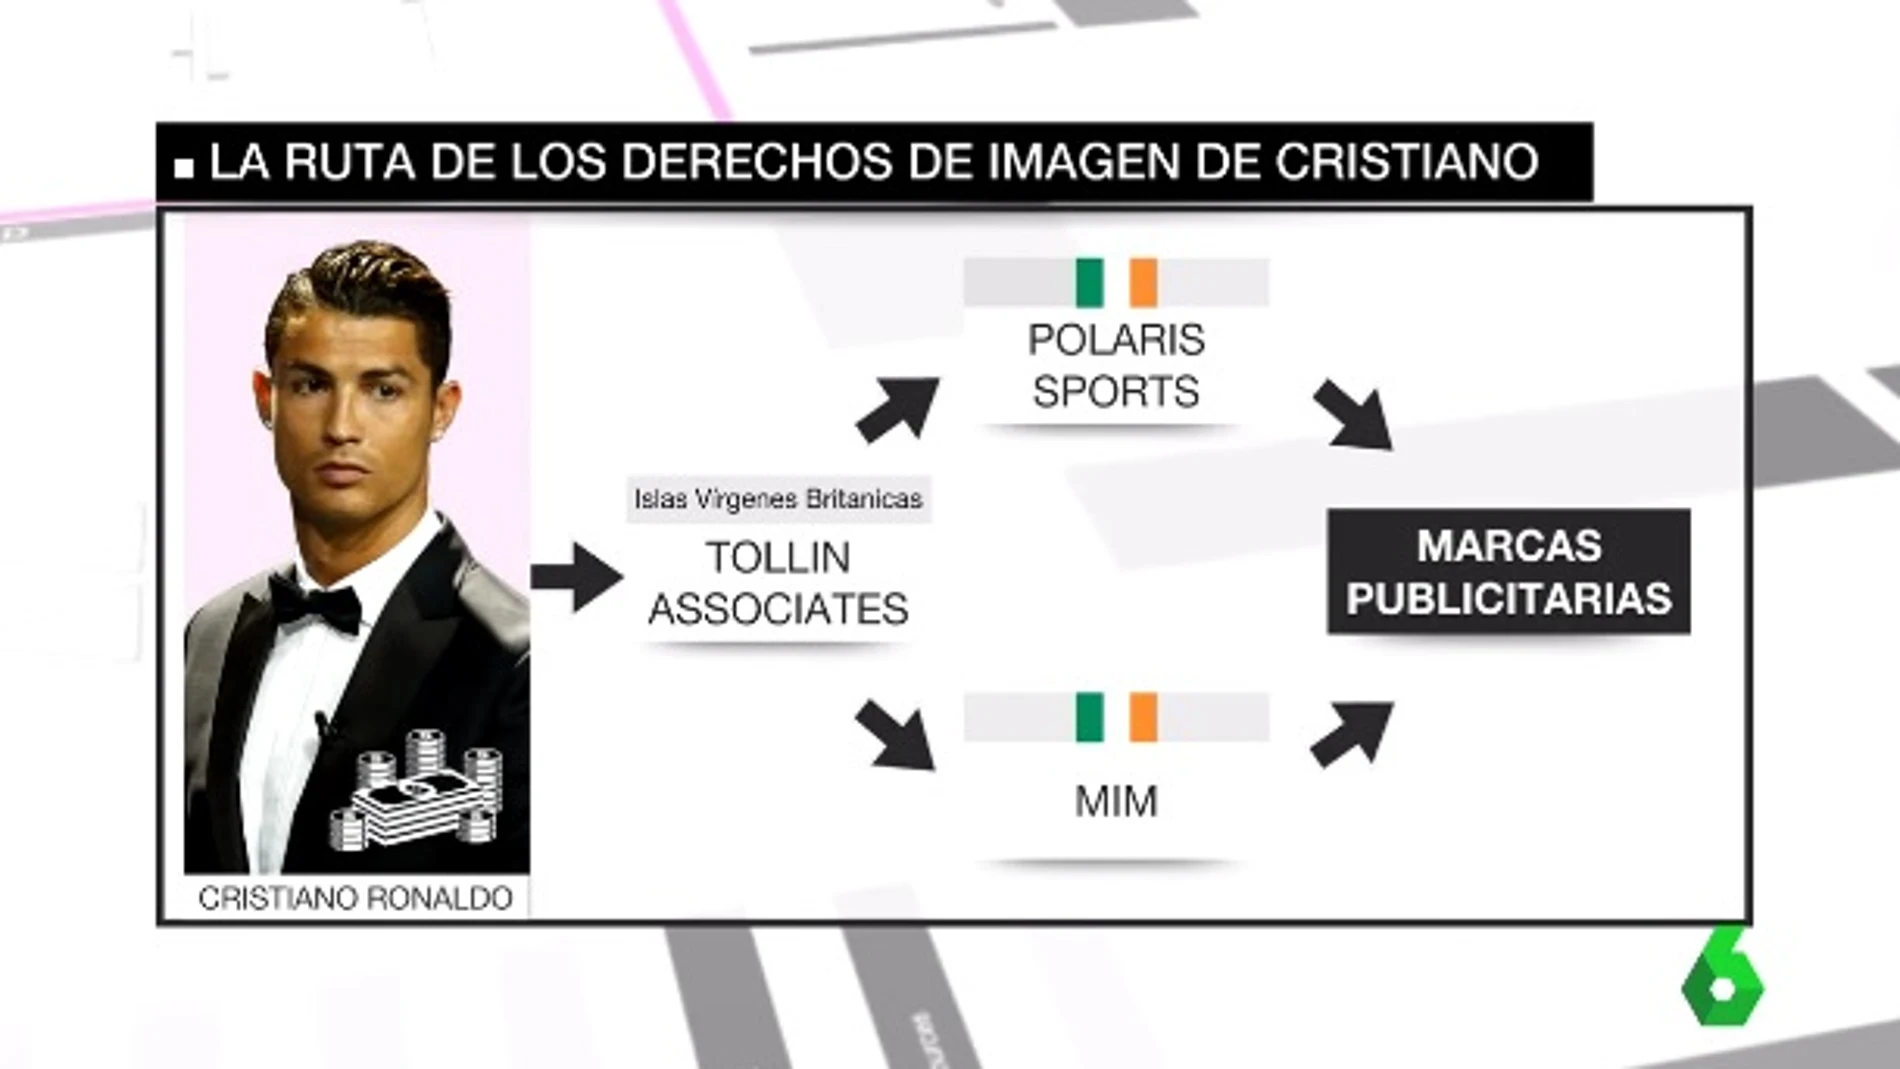 La ruta del los derechos de imagen de Cristiano Ronaldo